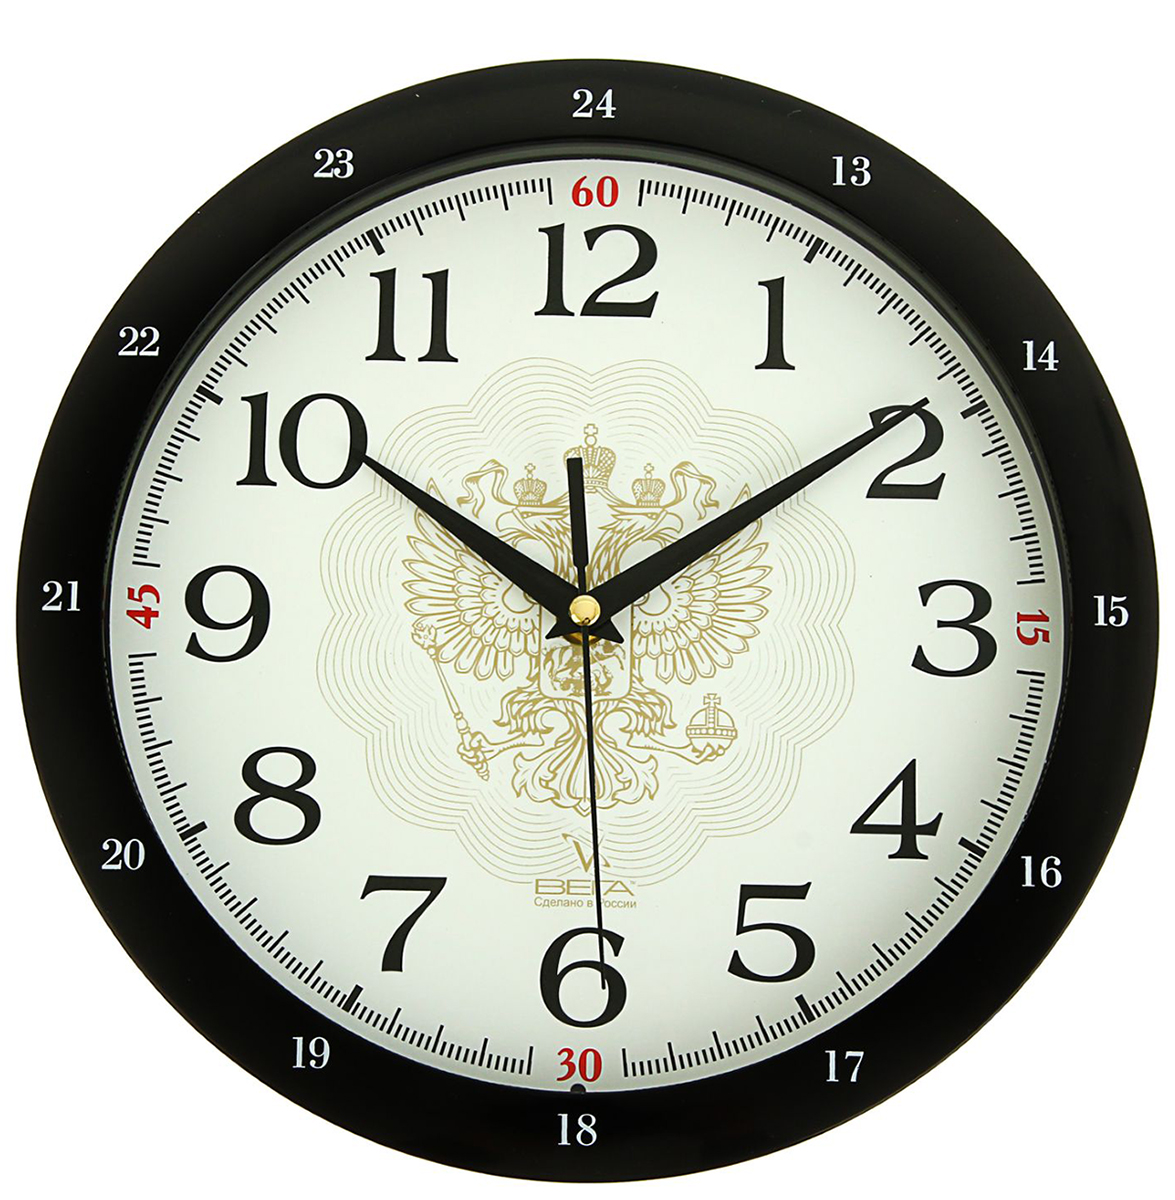 Производитель настенных часов. Часы настенные Vigor д-30 флаг с гербом. Часы Vigor д-29 герб РФ. Часы Vigor д-24 нежность. Часы Vigor д-24 классика белая.